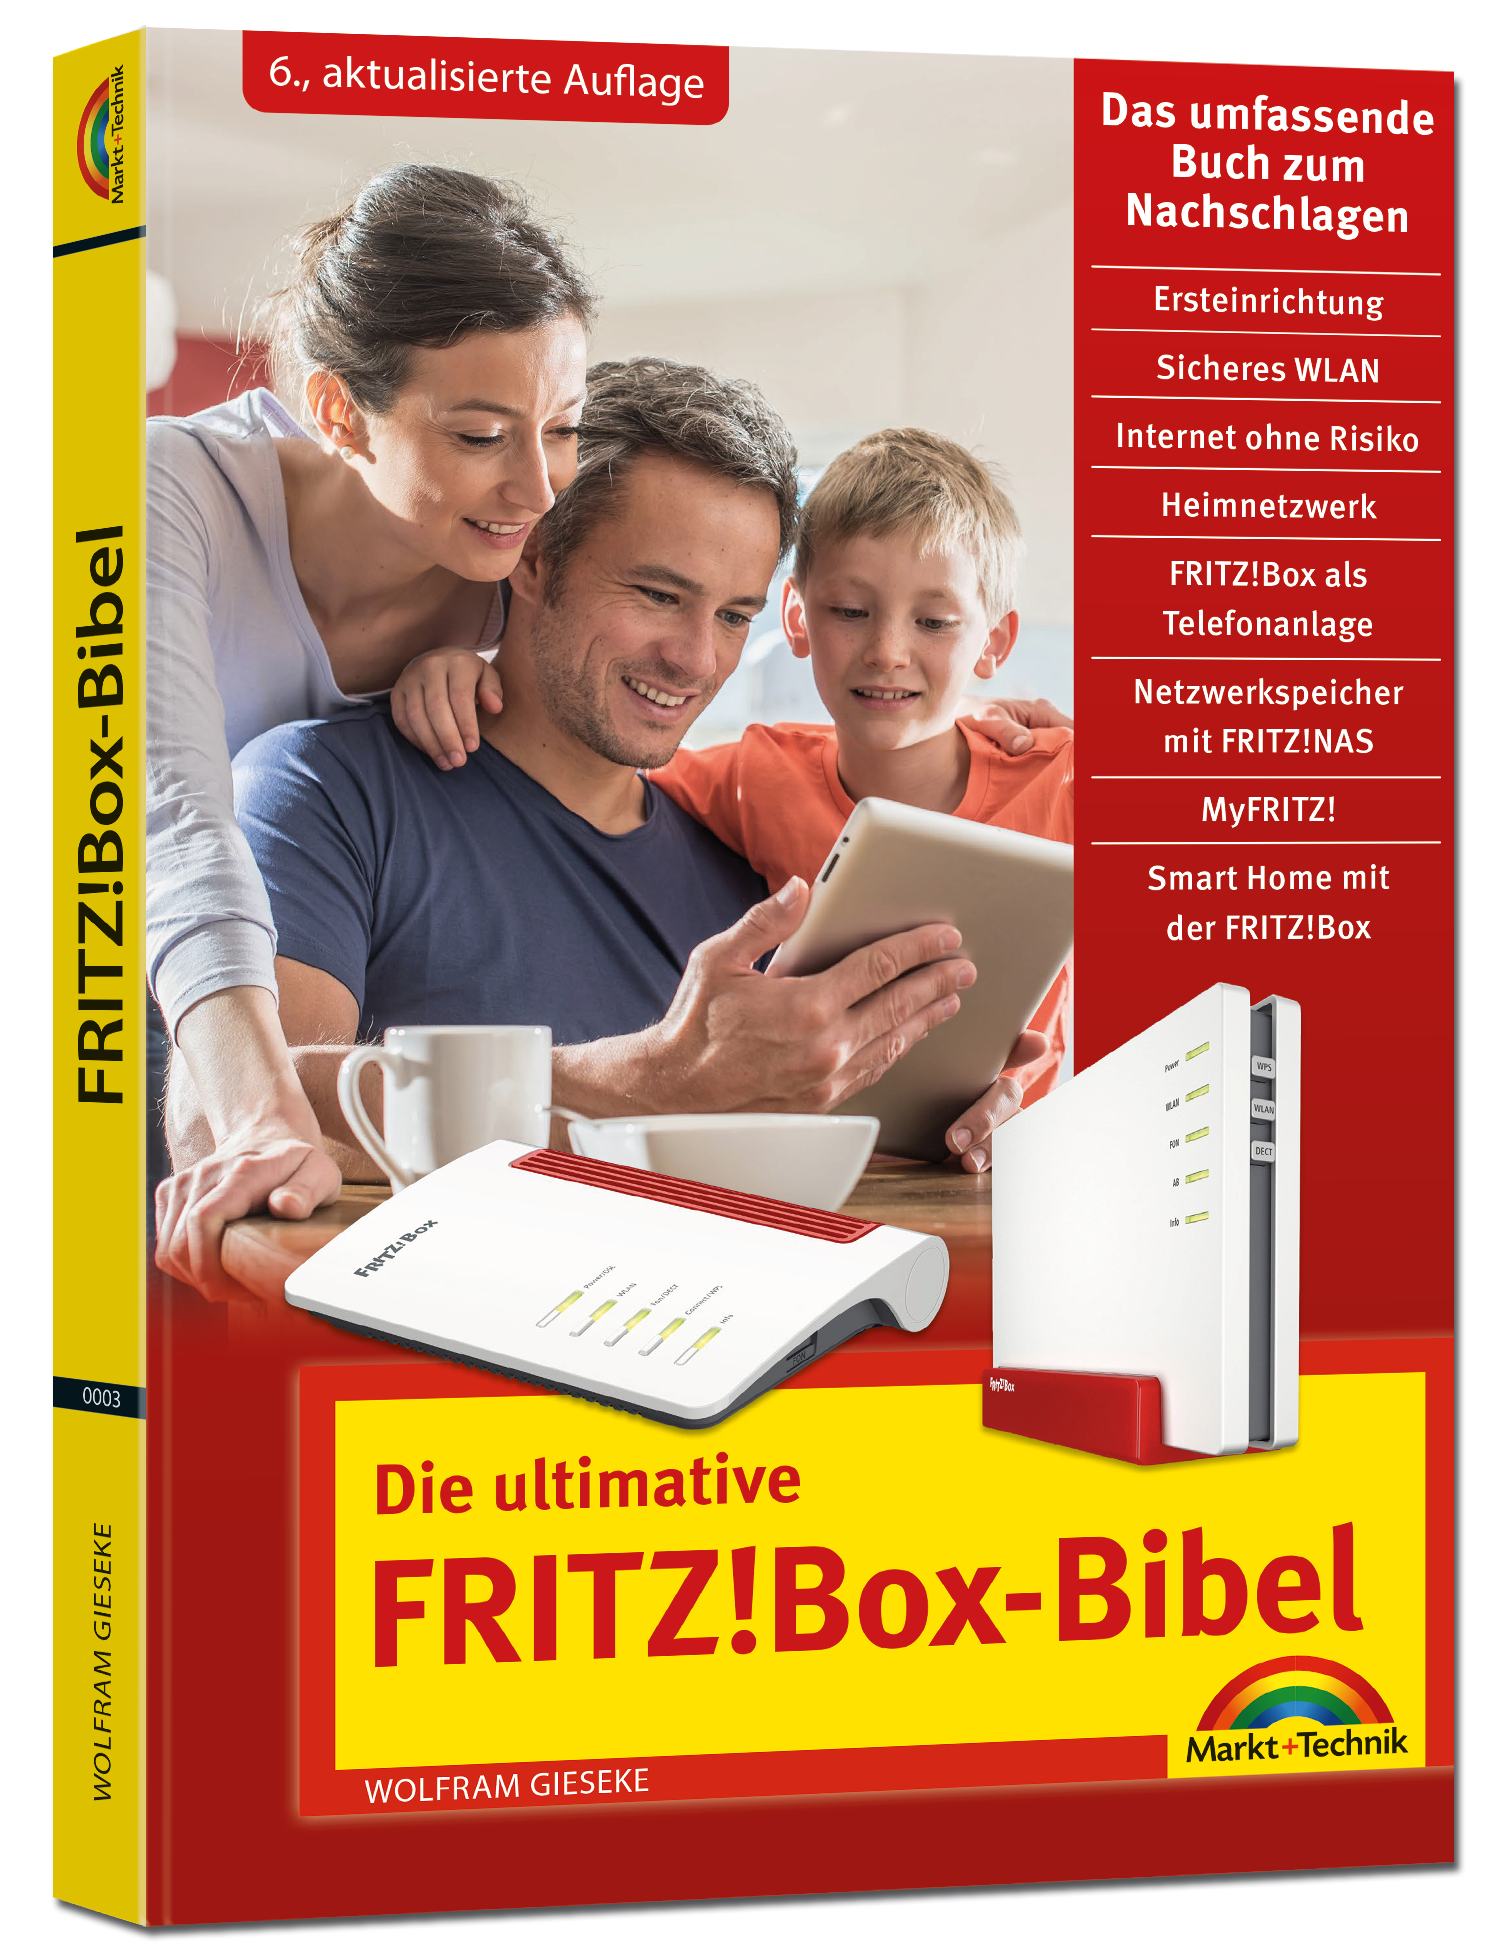 Die ultimative FRITZ!Box-Bibel (6. Auflage)